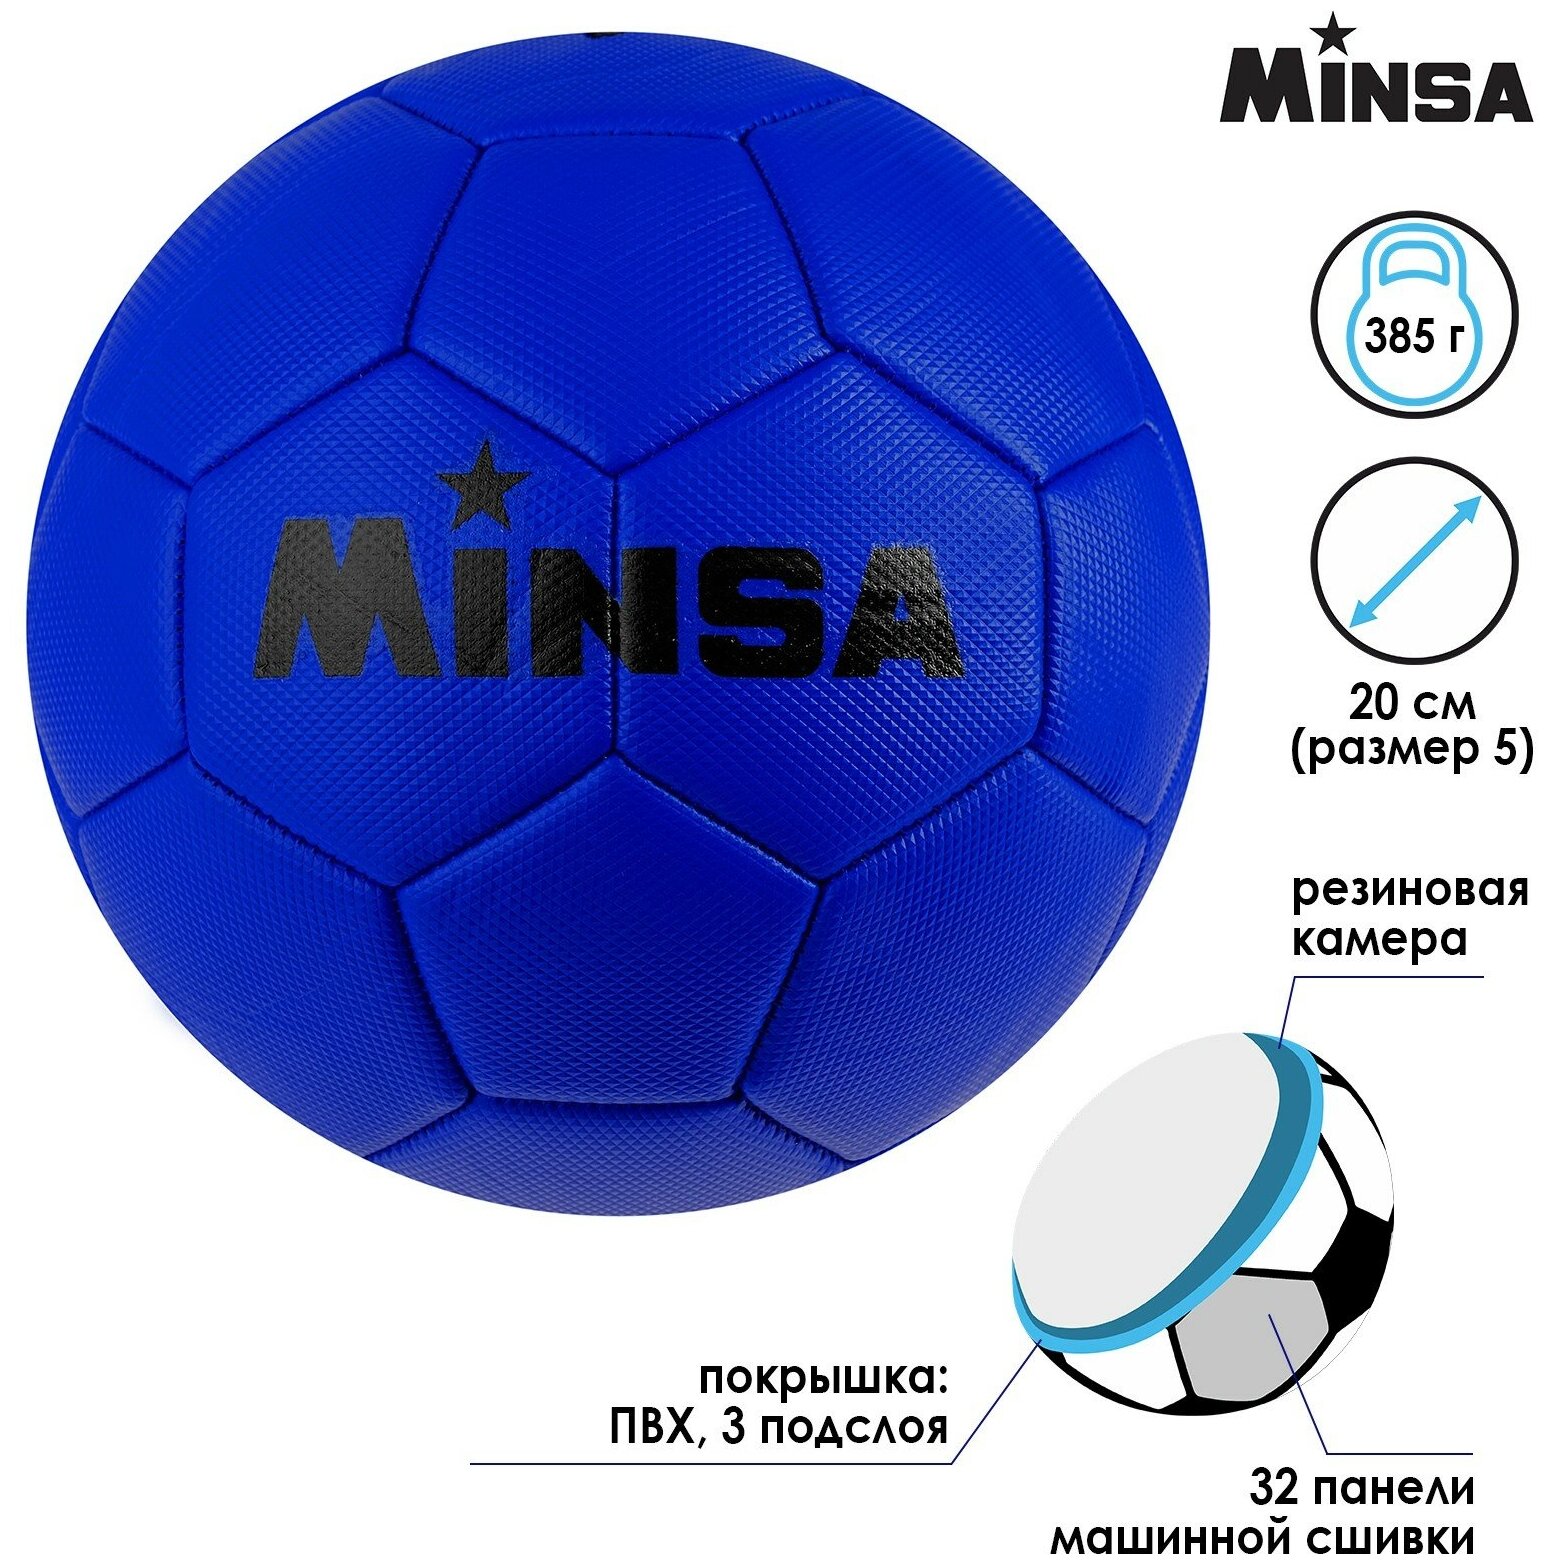 Мяч MINSA, футбольный, ПВХ, машинная сшивка, 32 панели, размер 5, вес 385 г, цвет синий